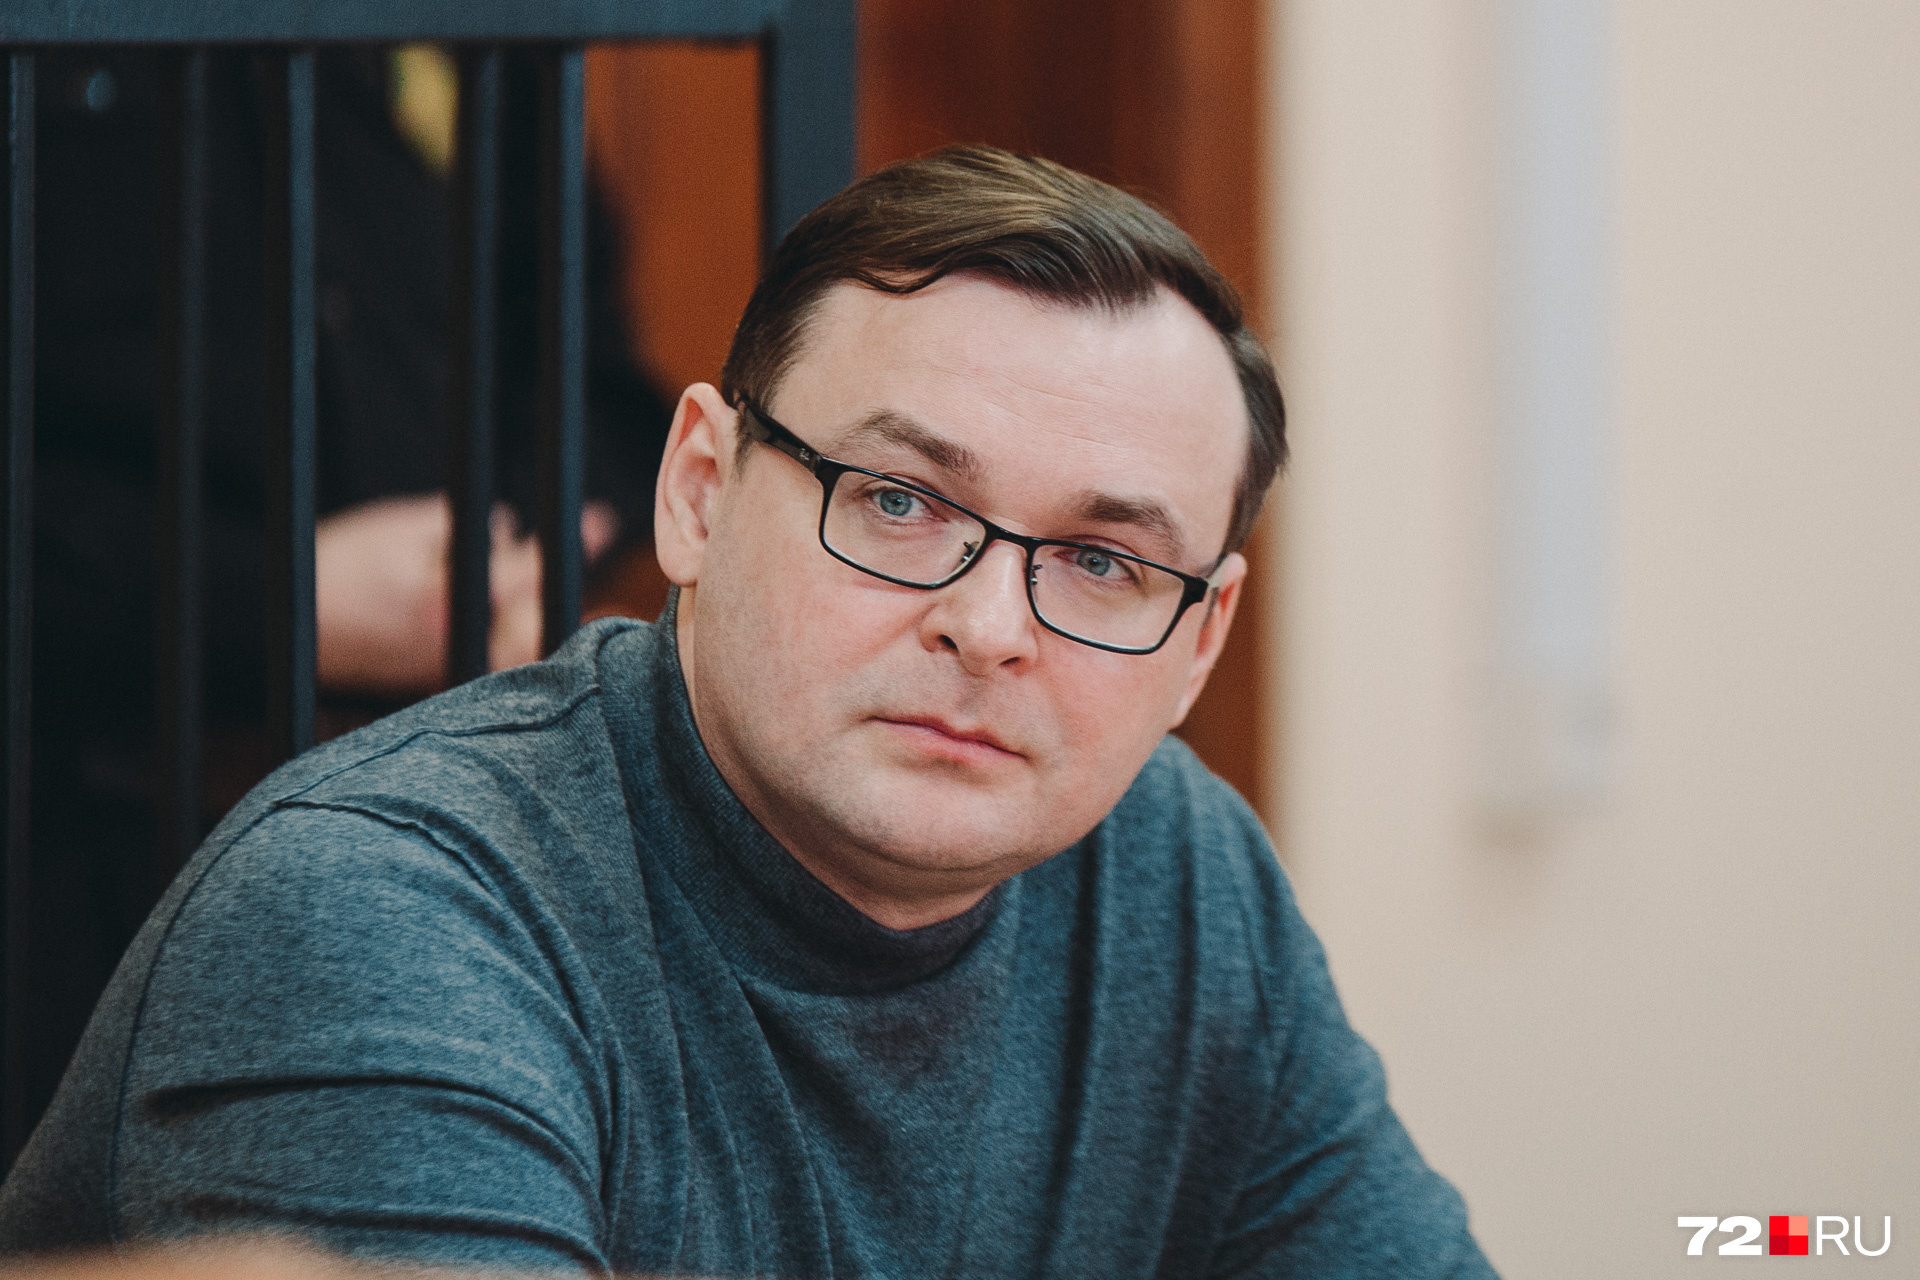 Дмитрий Еремеев едва не отделался судебным штрафом, но прокуратура обжаловала решение о закрытии его уголовного дела